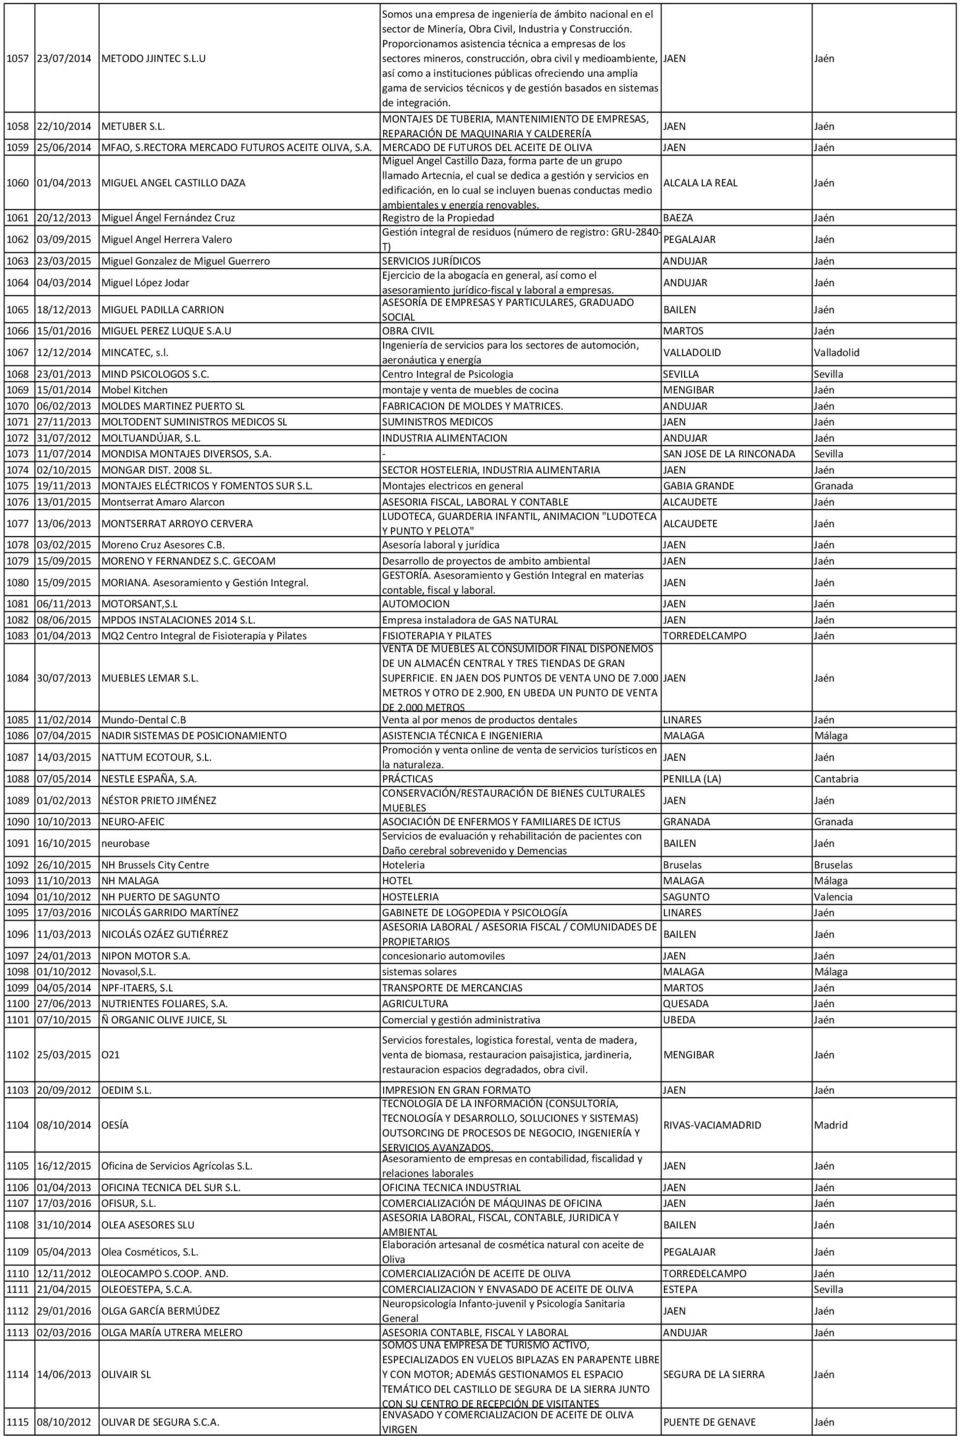 gestión basados en sistemas de integración. 1058 22/10/2014 METUBER S.L. MONTAJES DE TUBERIA, MANTENIMIENTO DE EMPRESAS, REPARACIÓN DE MAQUINARIA Y CALDERERÍA 1059 25/06/2014 MFAO, S.